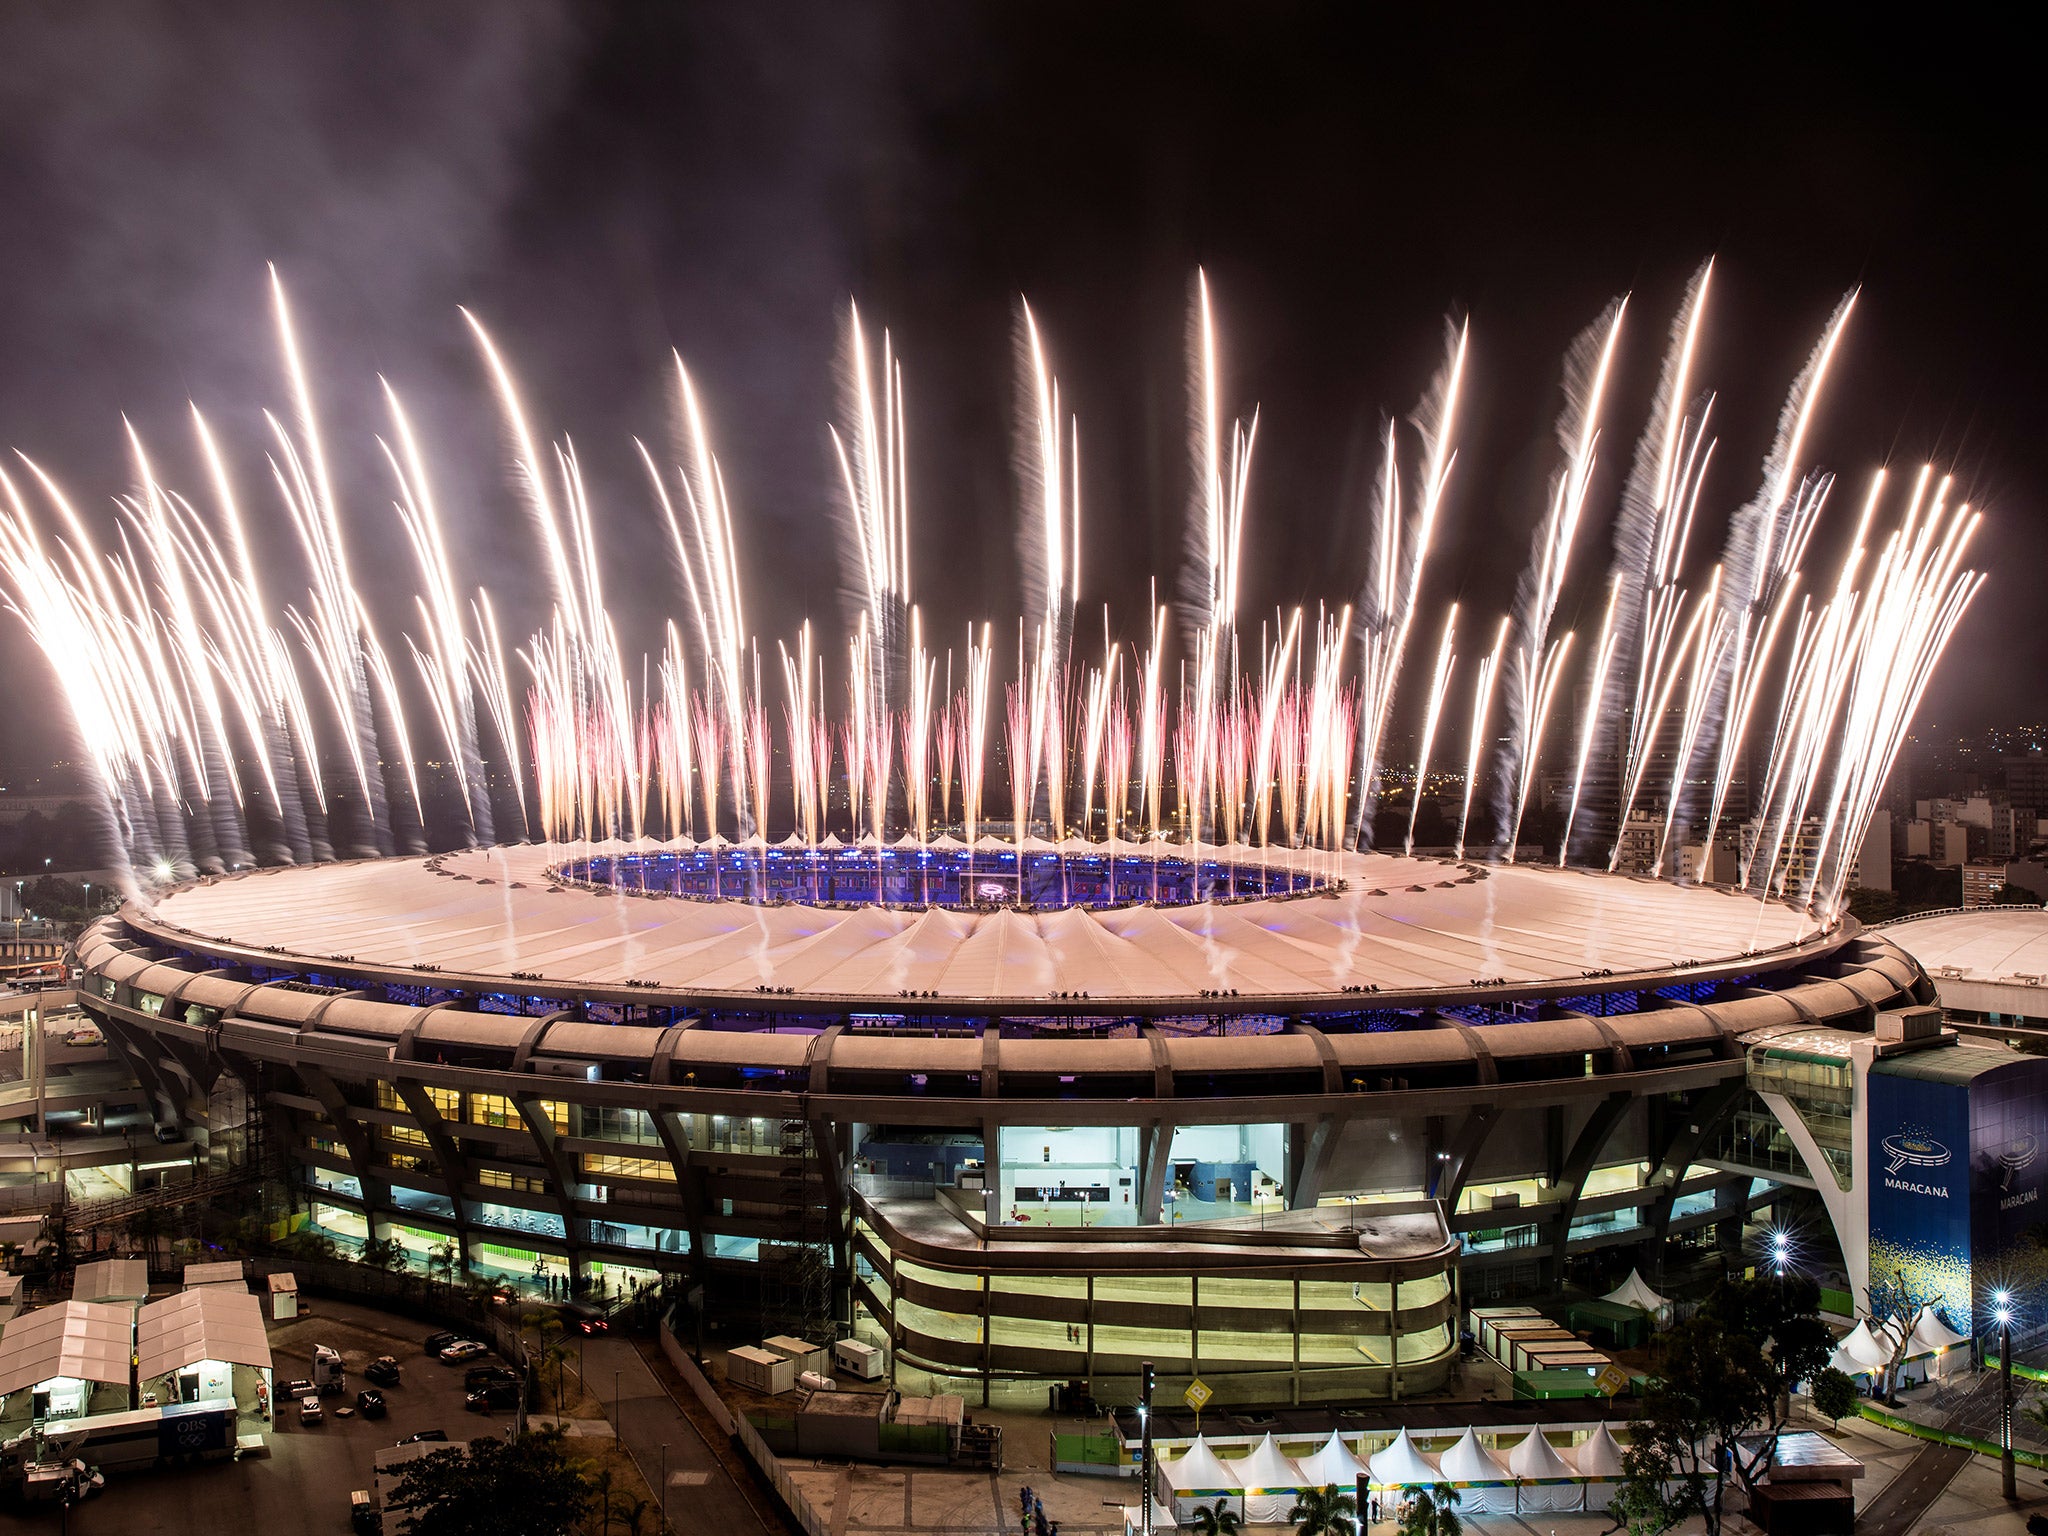 The Maracana Stadium hosts the Rio Olympics opening ceremony